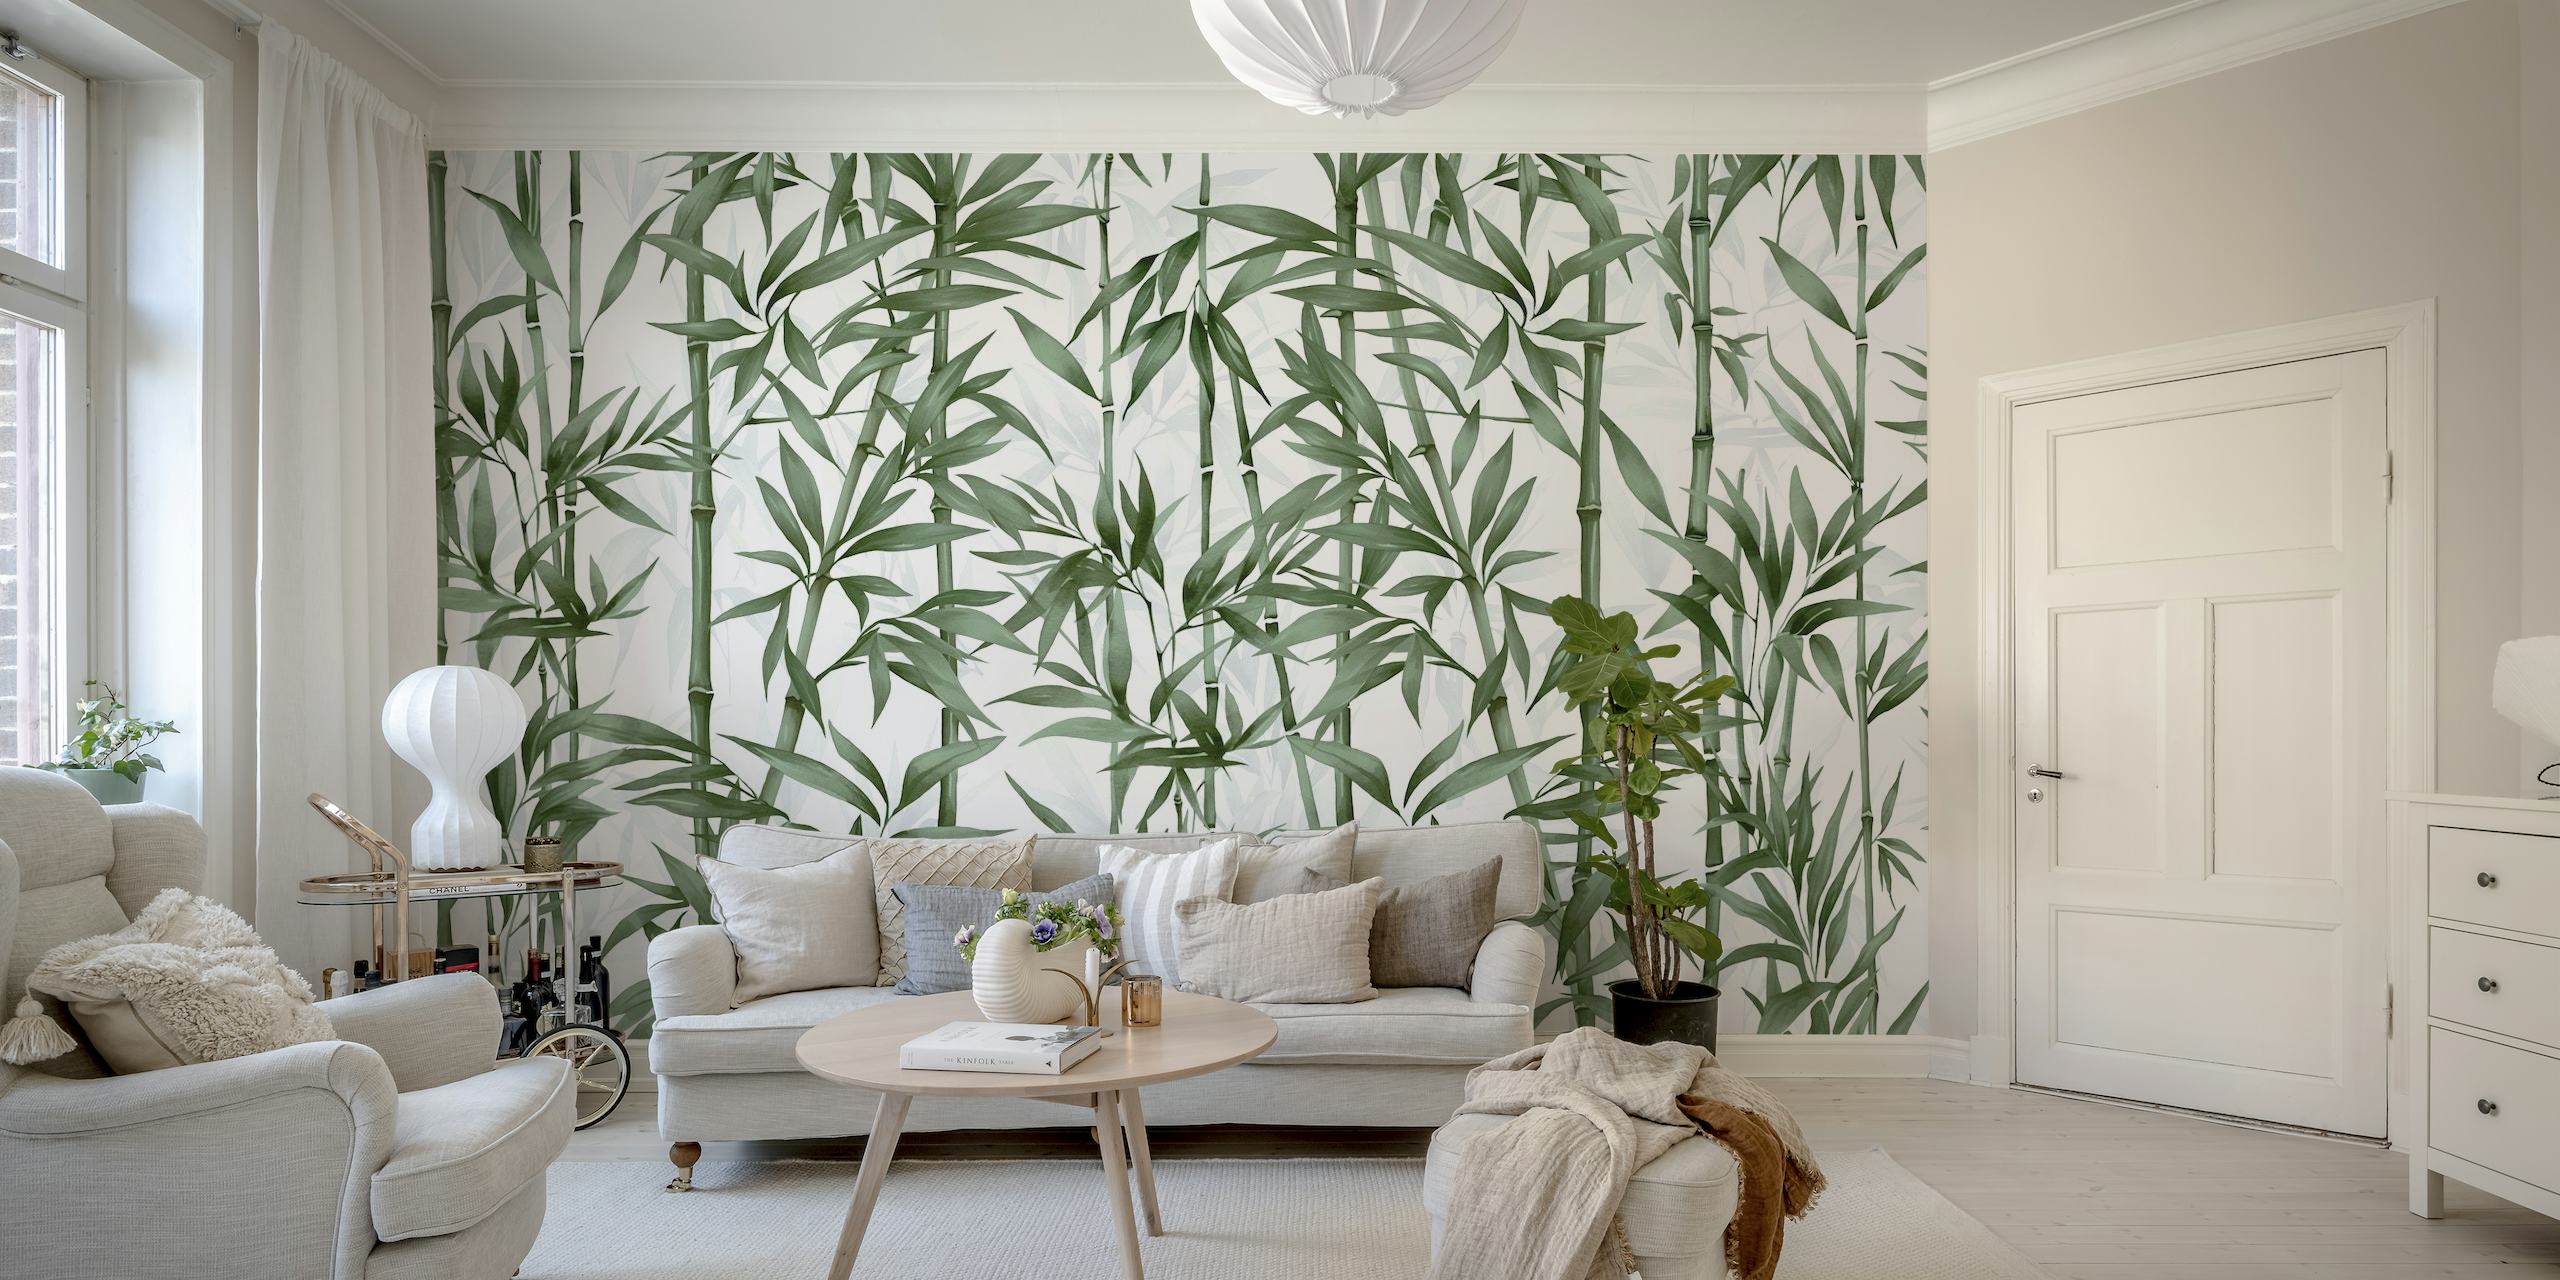 Papier peint mural de tiges de bambou vertes pour une décoration intérieure tranquille